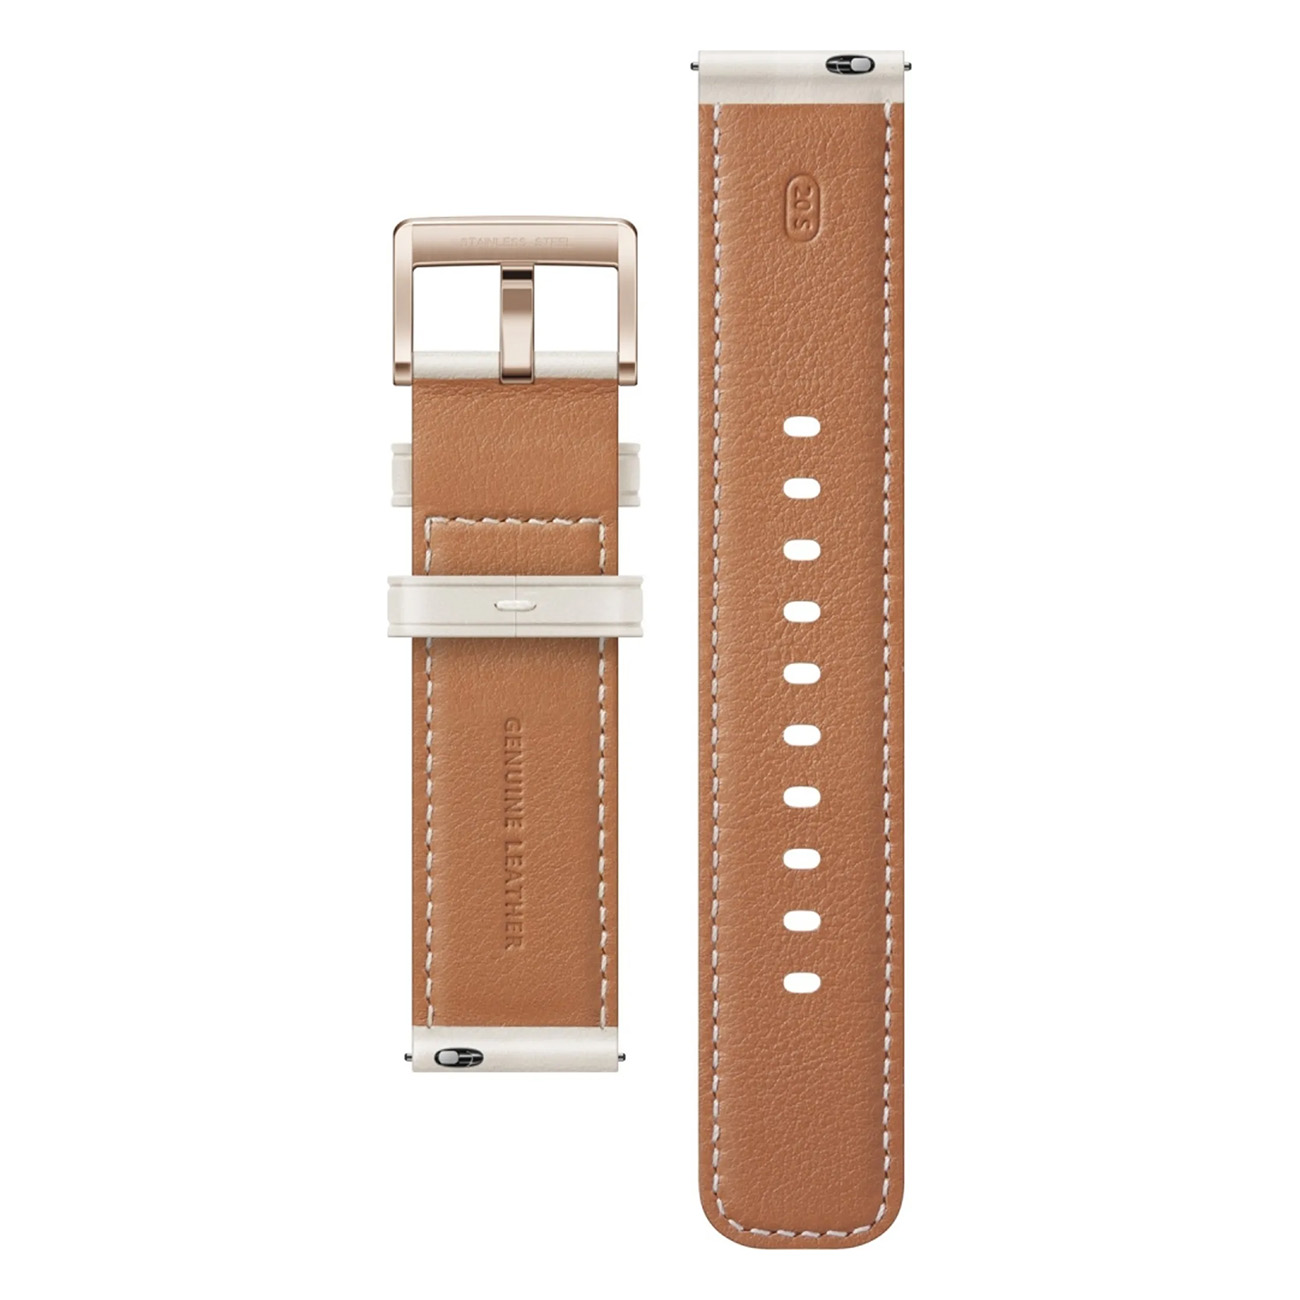 HUAWEI Watch GT3 -gold-leder-42mm Smartwatch 130 Leather 190 - Leder, Gold Edelstahl mm